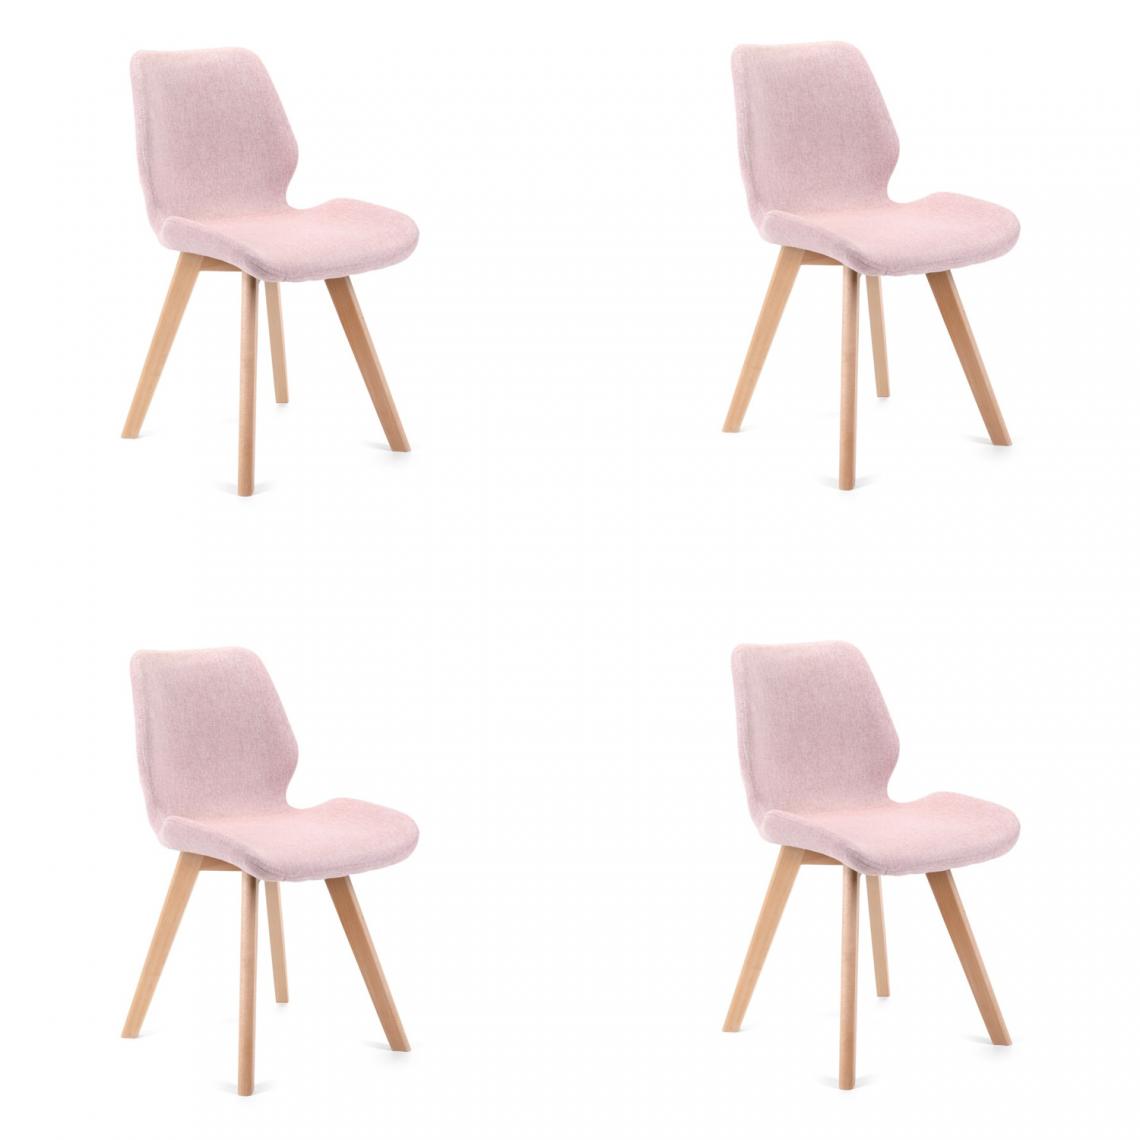 Hucoco - BROLI - Chaise rembourrée 4 pcs style moderne salon/salle à manger - 82.5x40x53 - Pieds en bois - Rose - Chaises